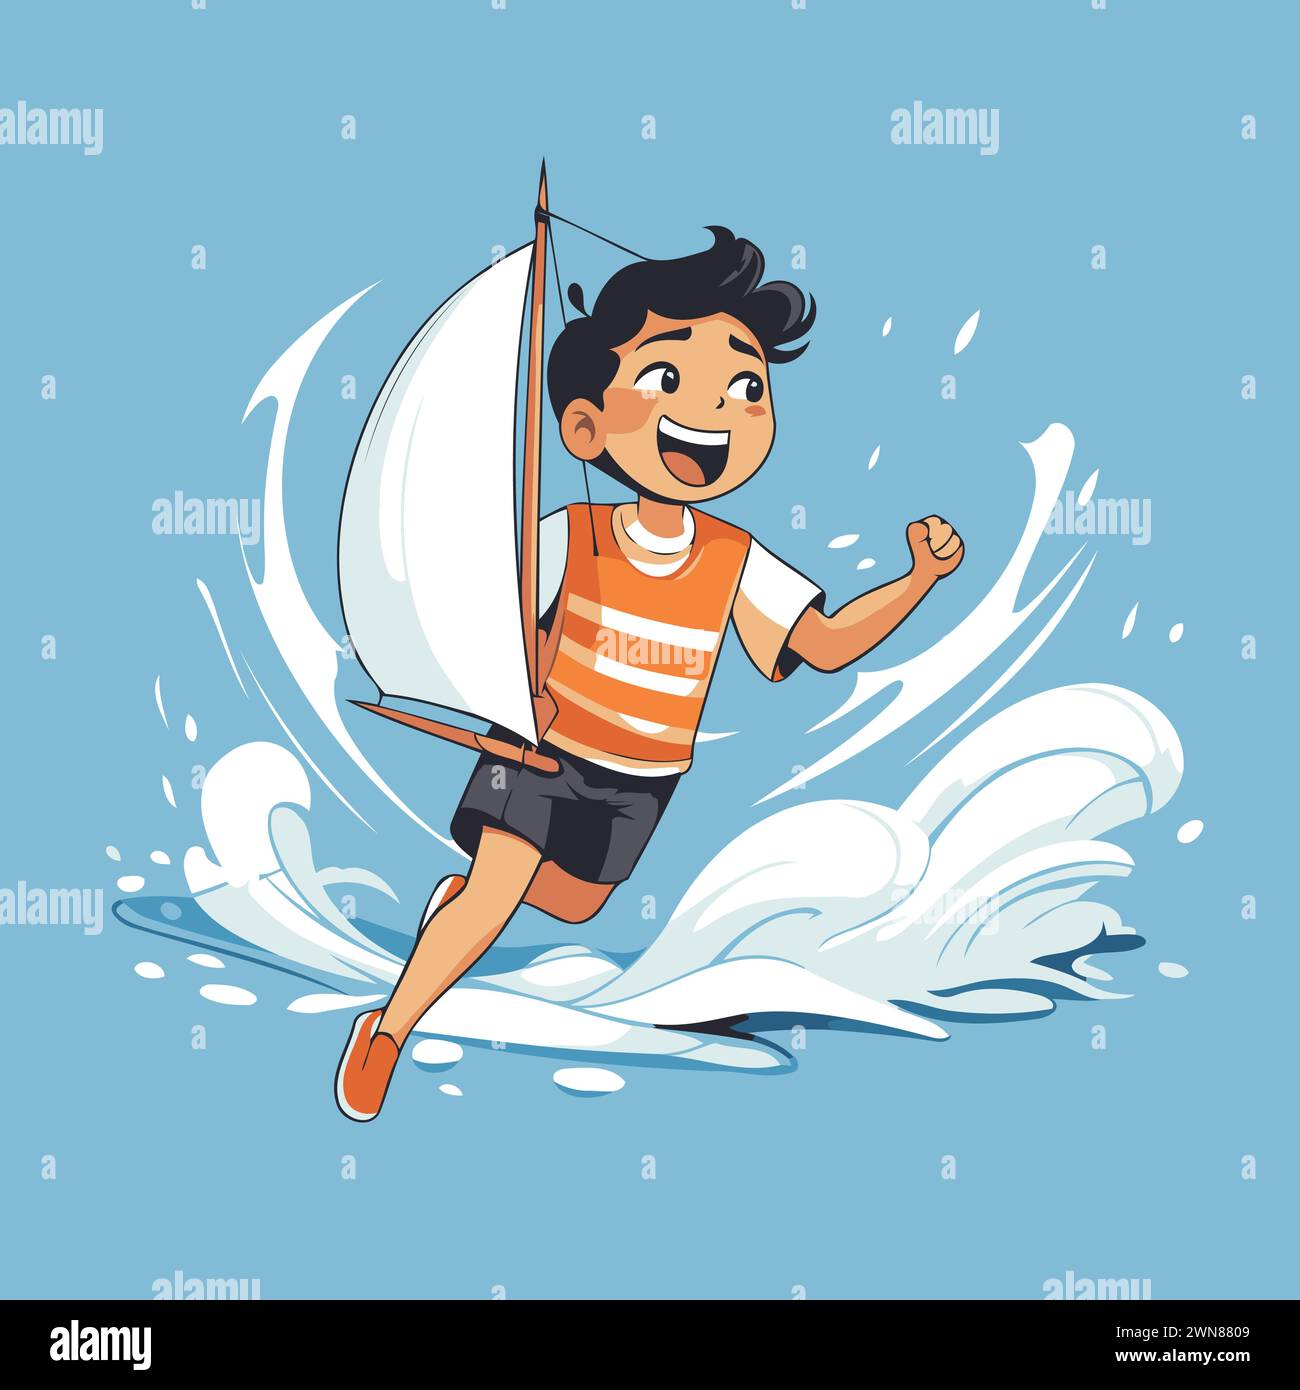 Happy boy jumping from windsurf board. Vector cartoon illustration. Stock Vector